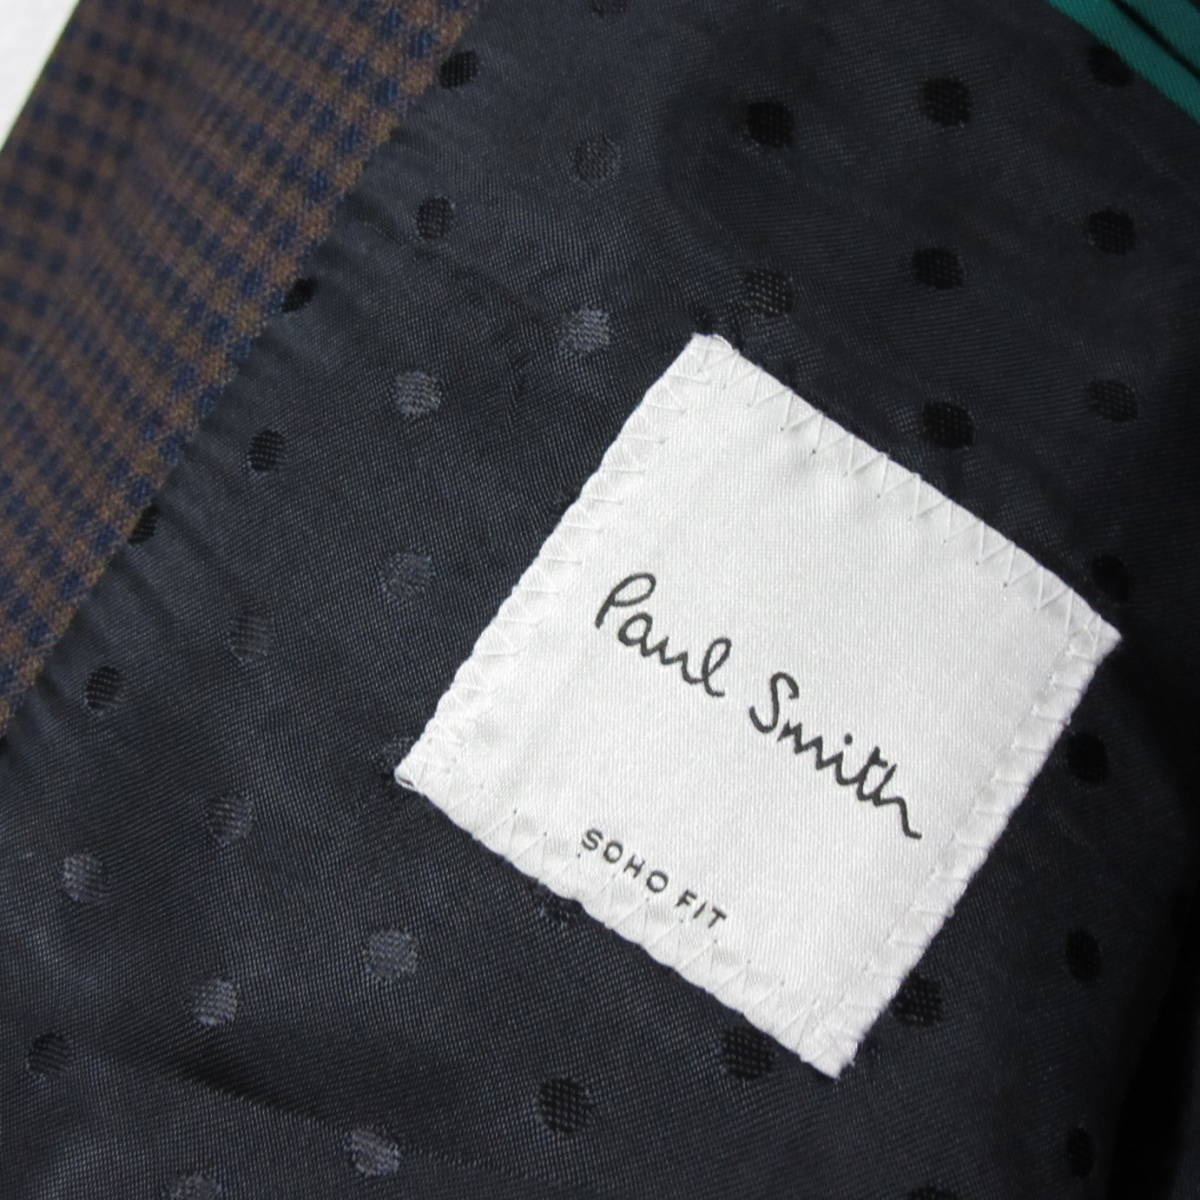 新品タグ付き PAUL SMITH ポールスミス セットアップ スーツ SOHO FIT モード コレクション Super140's マイクロチェック  R38 Mサイズ